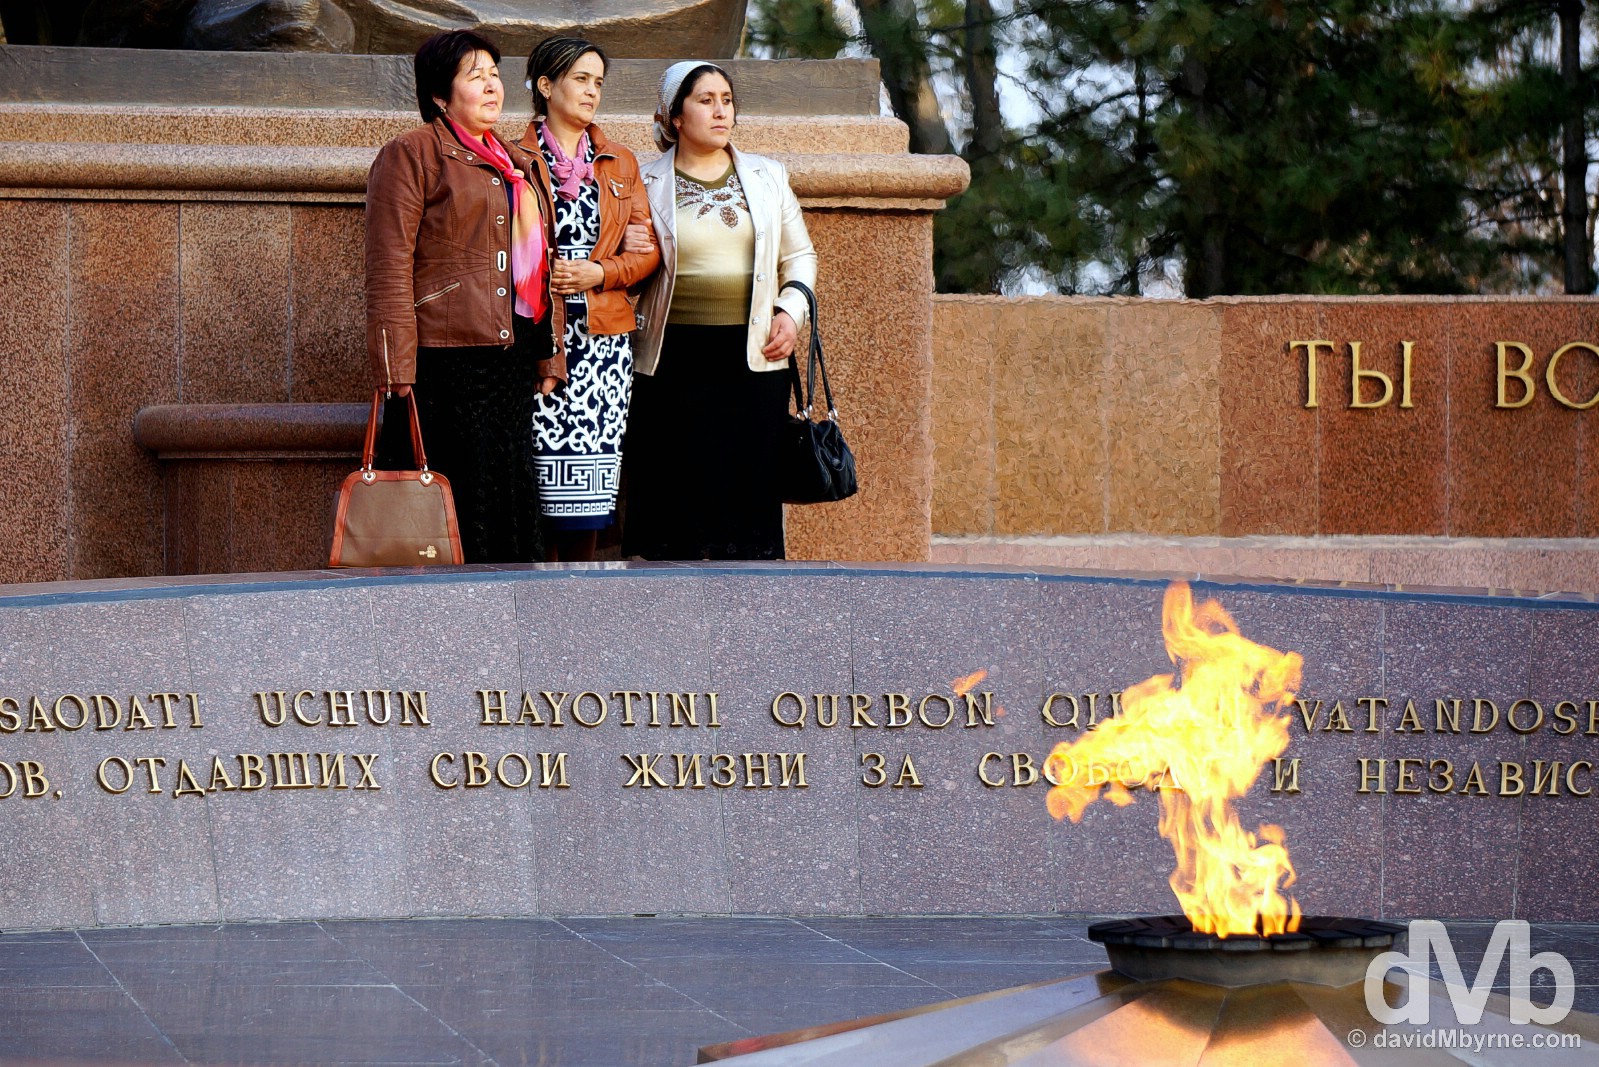 Posing by the Crying Mother Monument in Mustaqillik Maydoni, Tashkent, Uzbekistan. March 5, 2015.